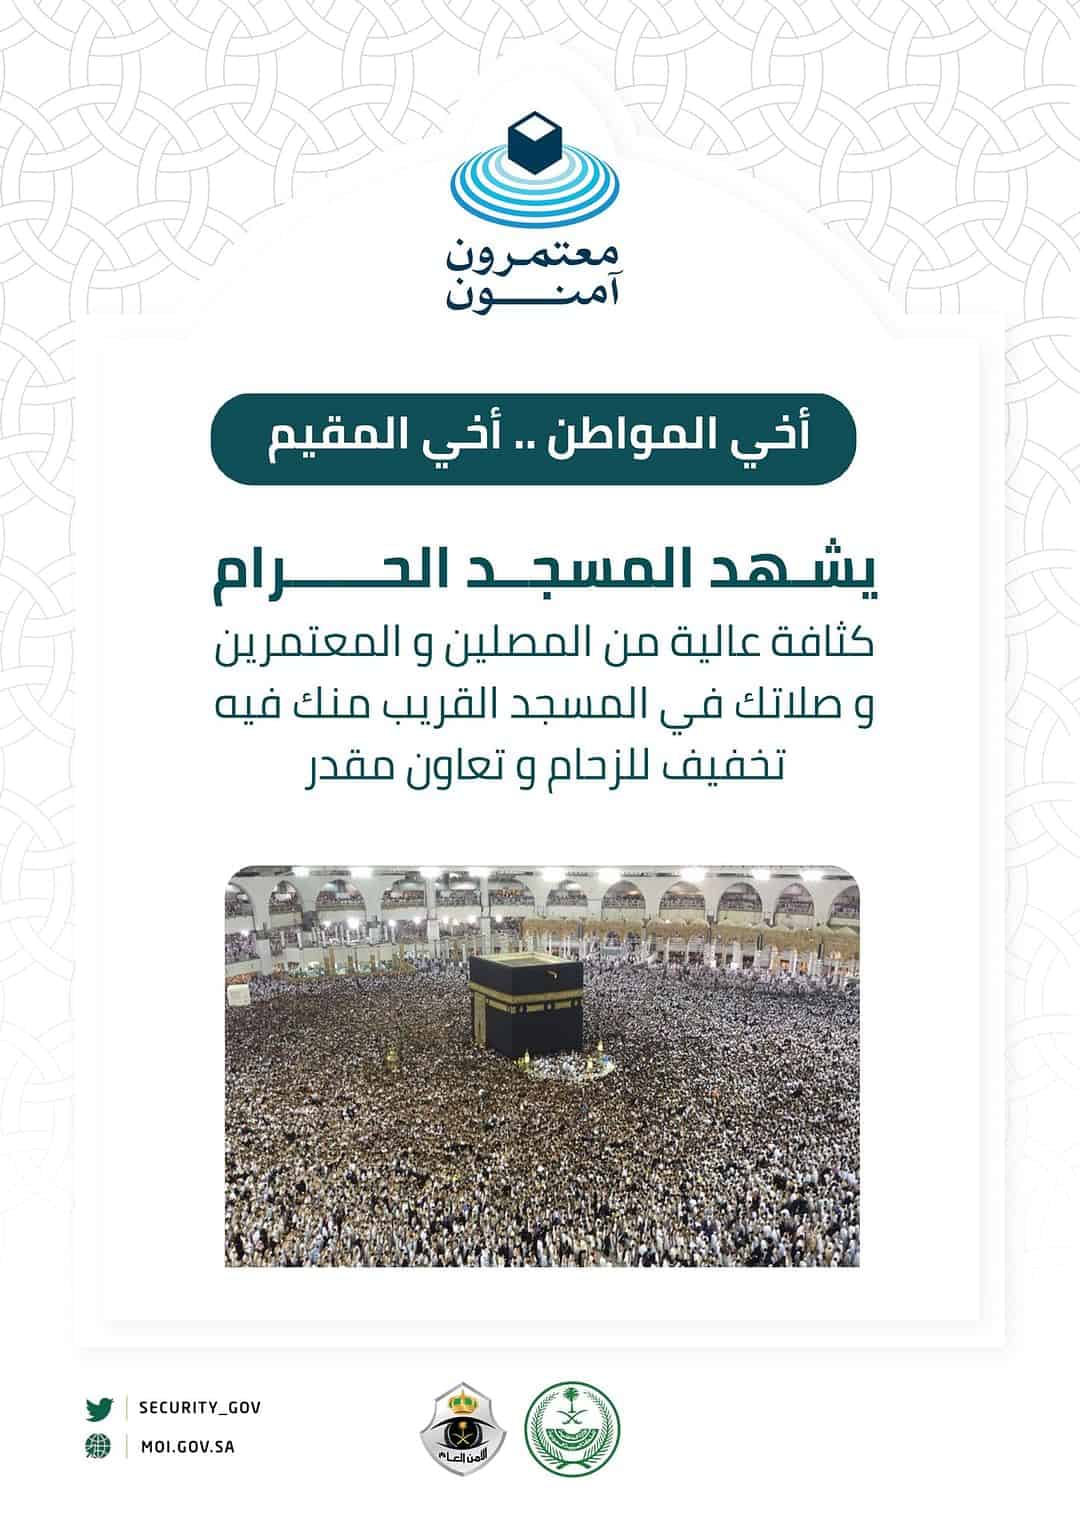 «الأمن العام» يوجه نصيحة مهمة للمواطنين والمقيمين بسبب ازدحام المسجد الحرام